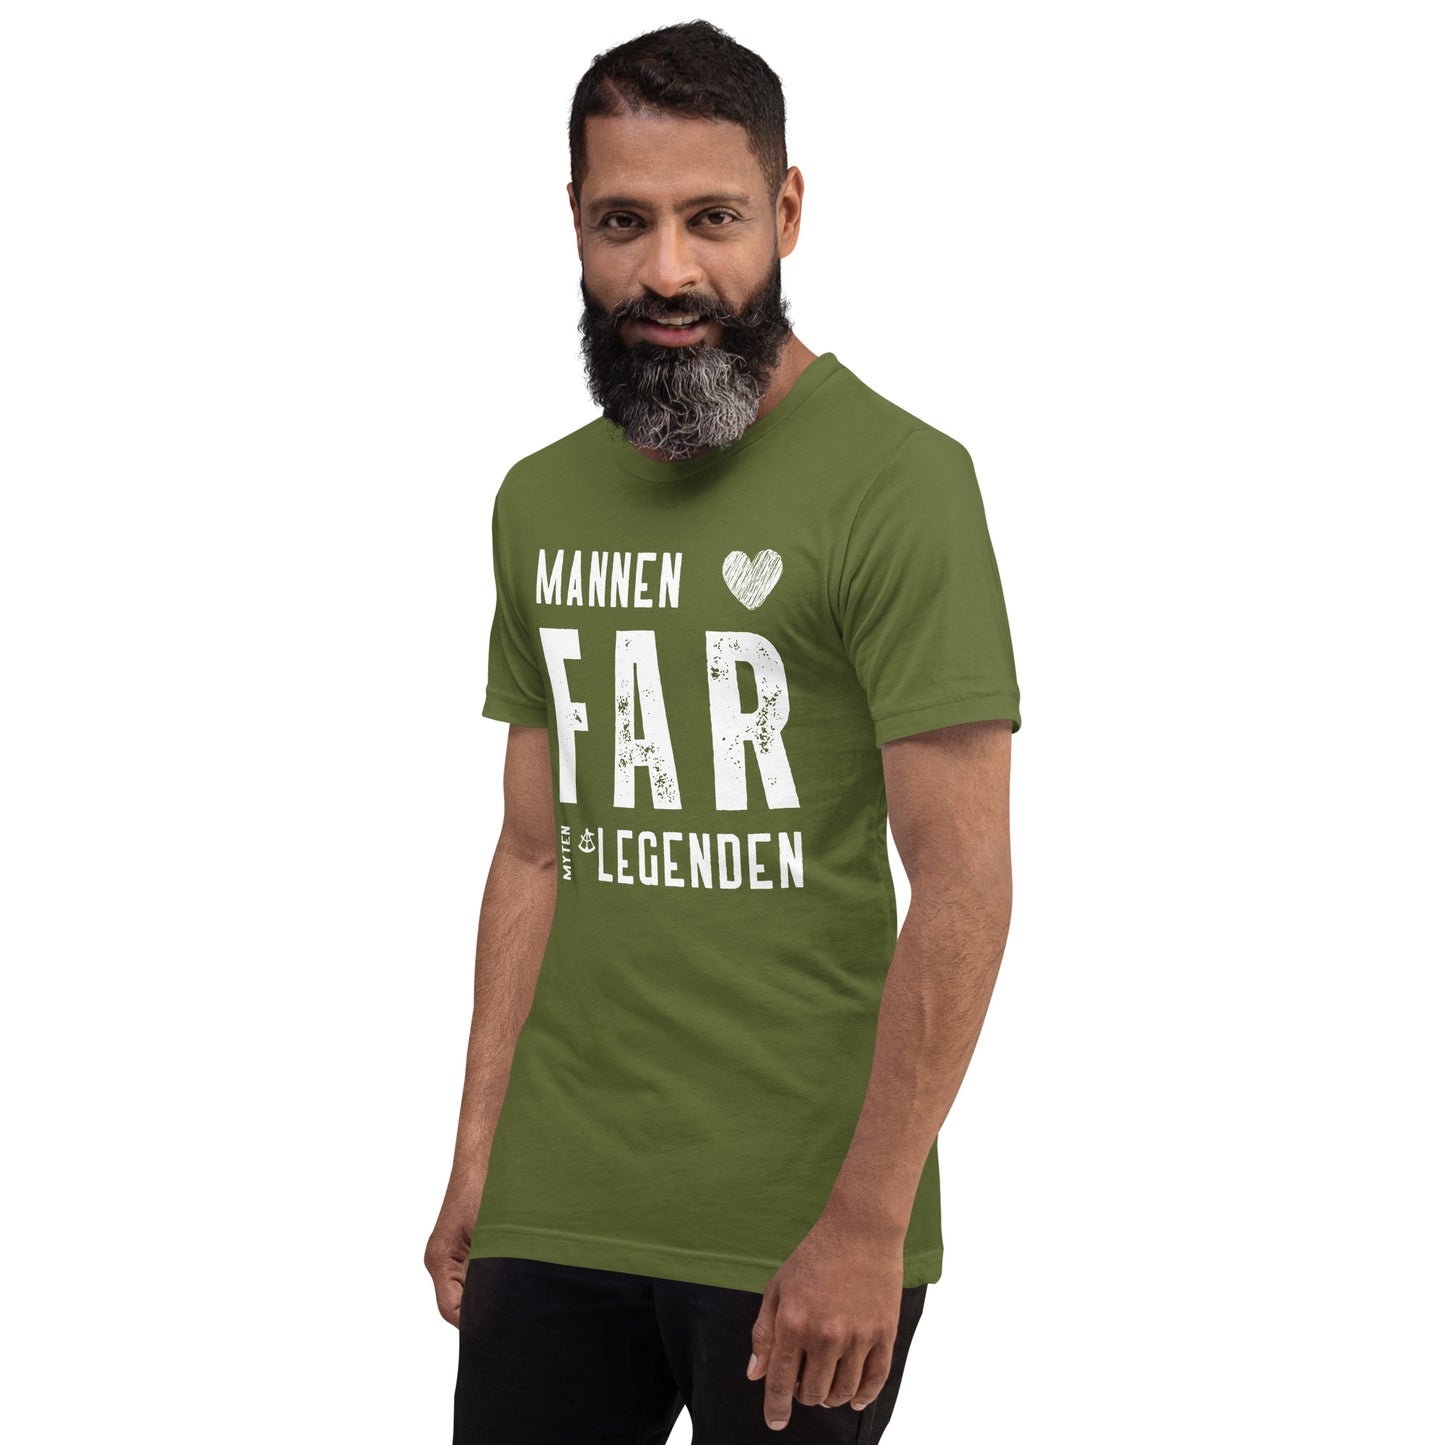 T-Shirt Herr - Mannen Far Legenden